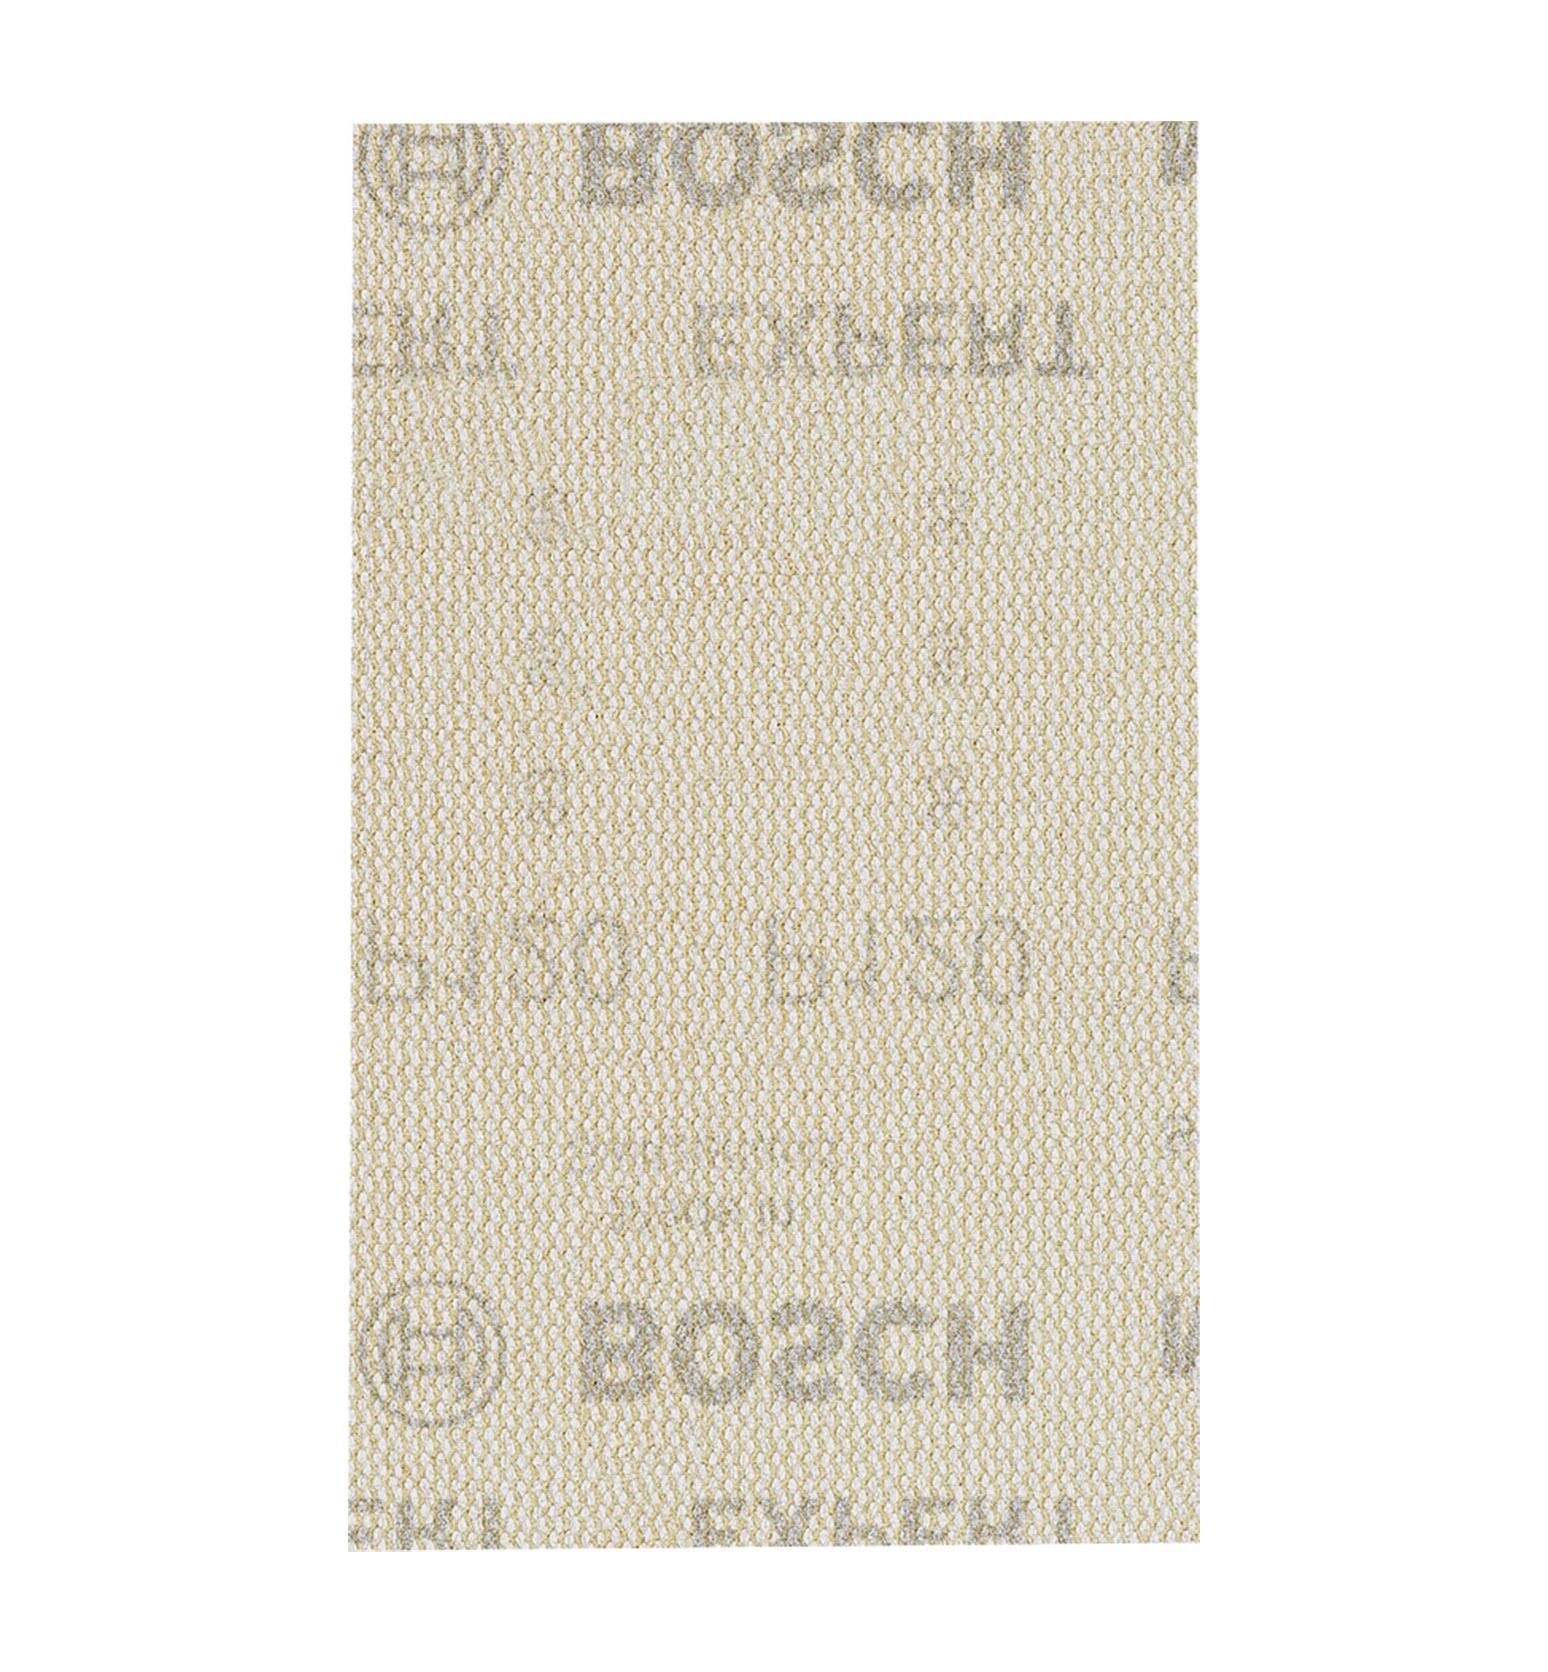 Bosch M480 80x133 mm 120 kum Elek Telli Ağ Zımpara 2608900736